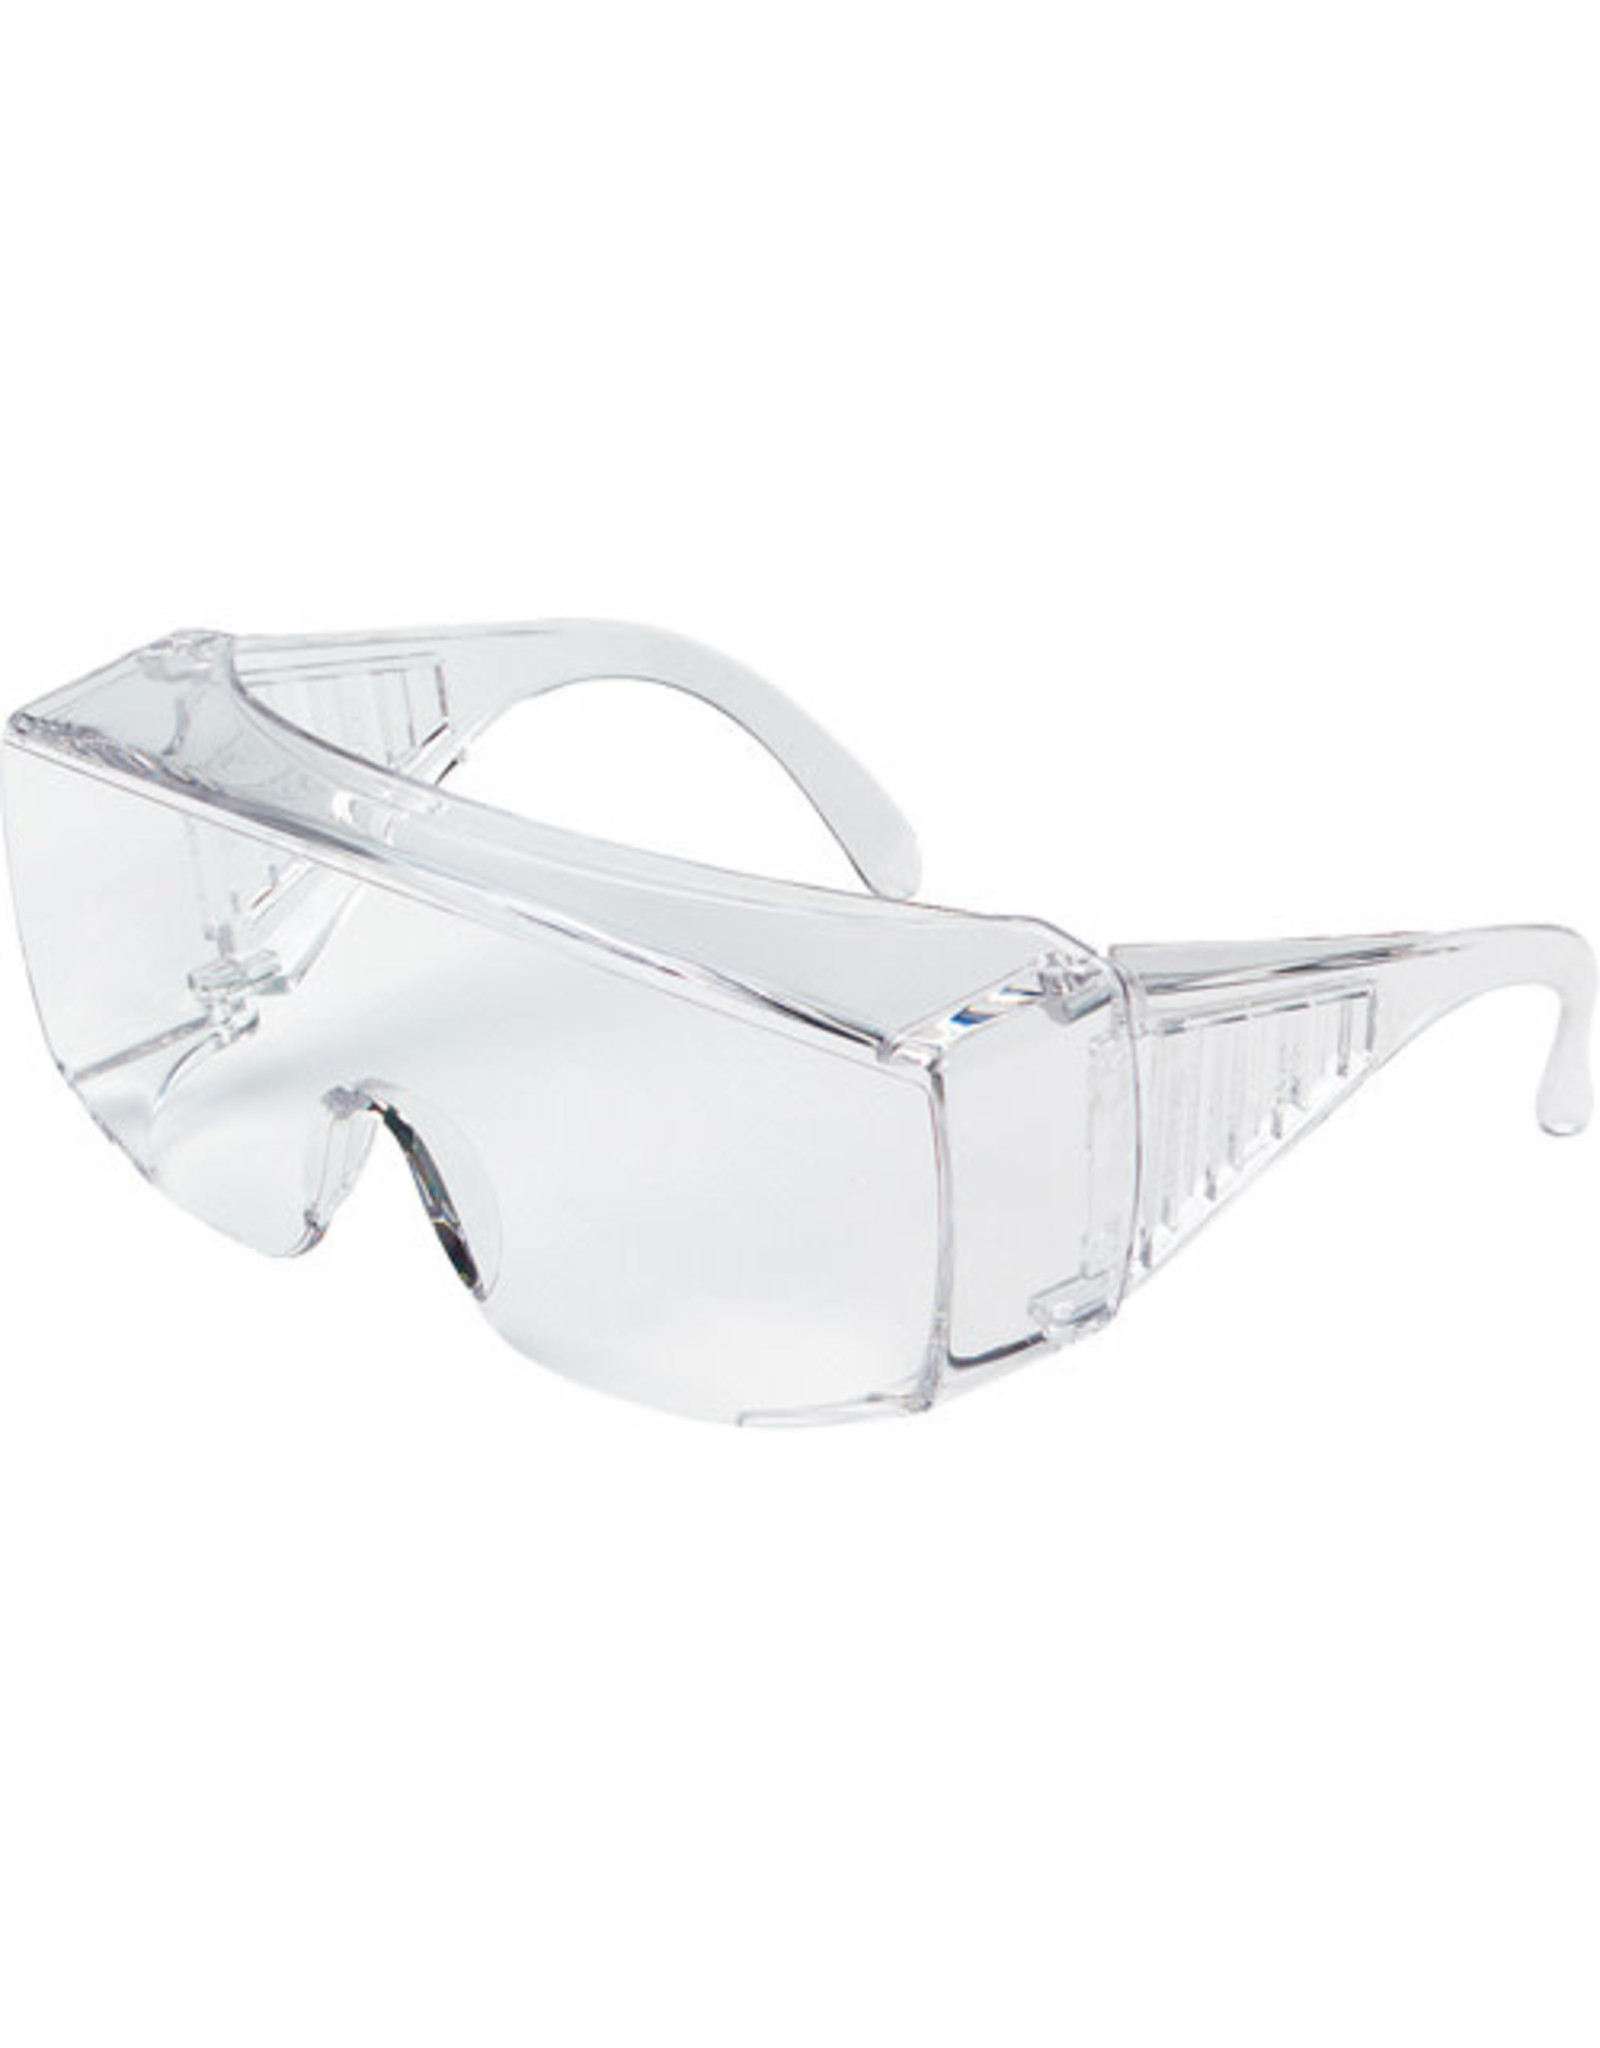 MSR Crews XL OTG Safety Glasses, Uncoated